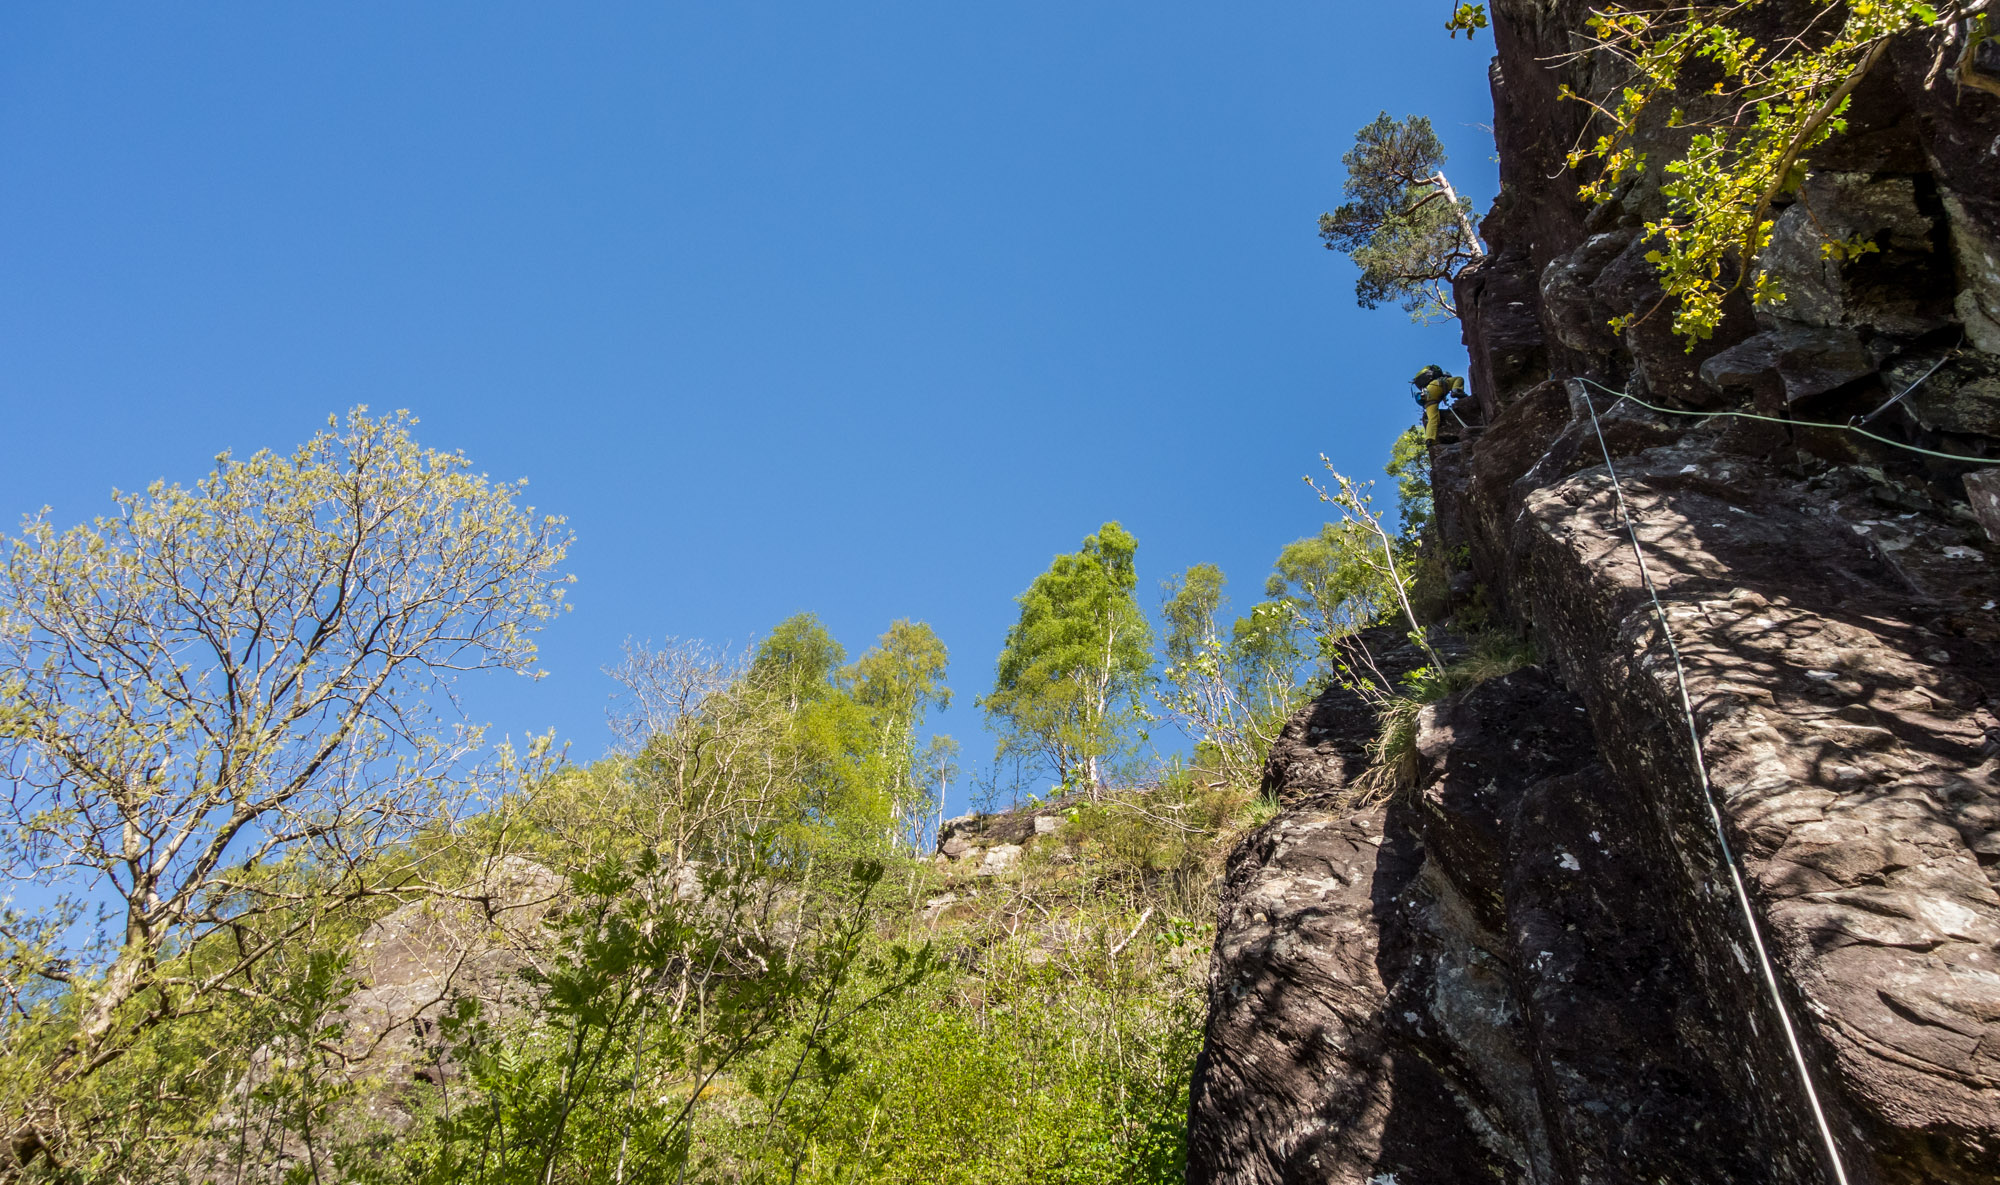 scottish summer rock climbing on heatwave glen nevis